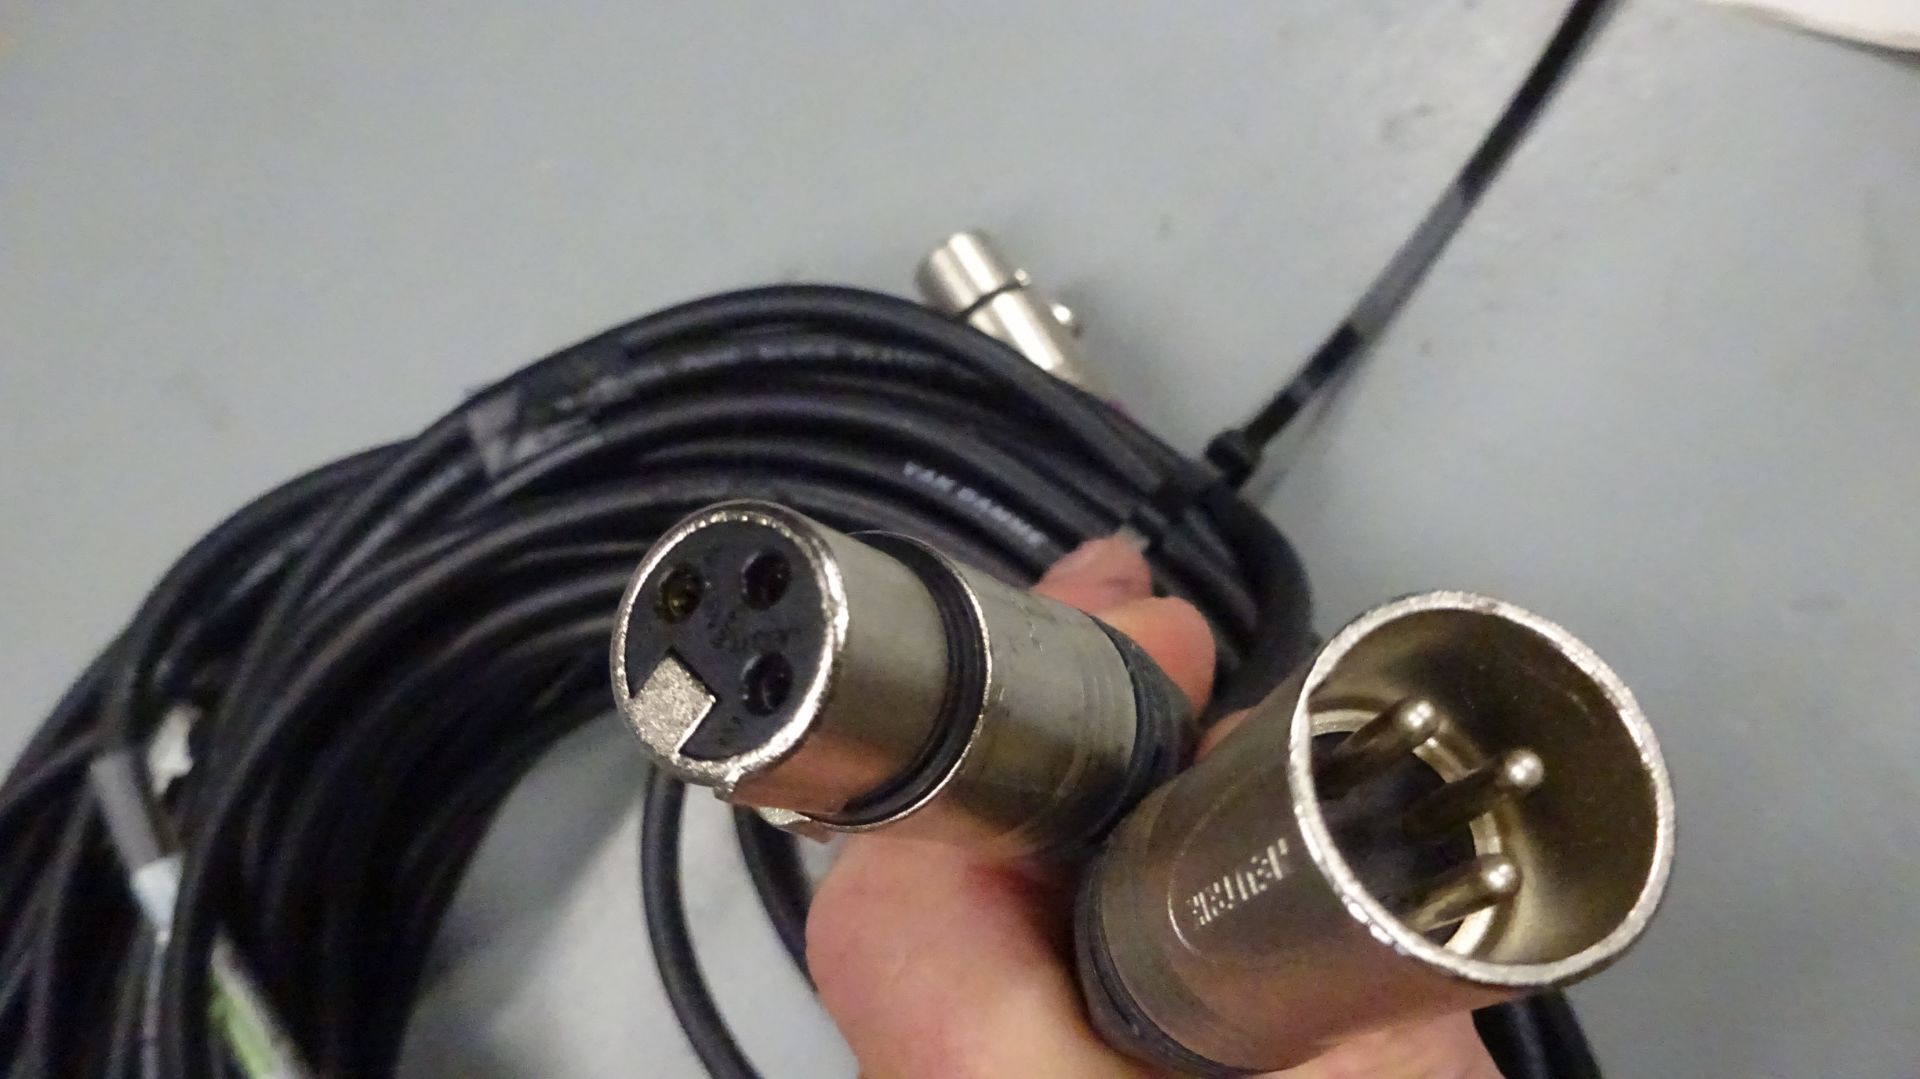 5 x 5m XLR M - XLR F Cable - Image 2 of 2